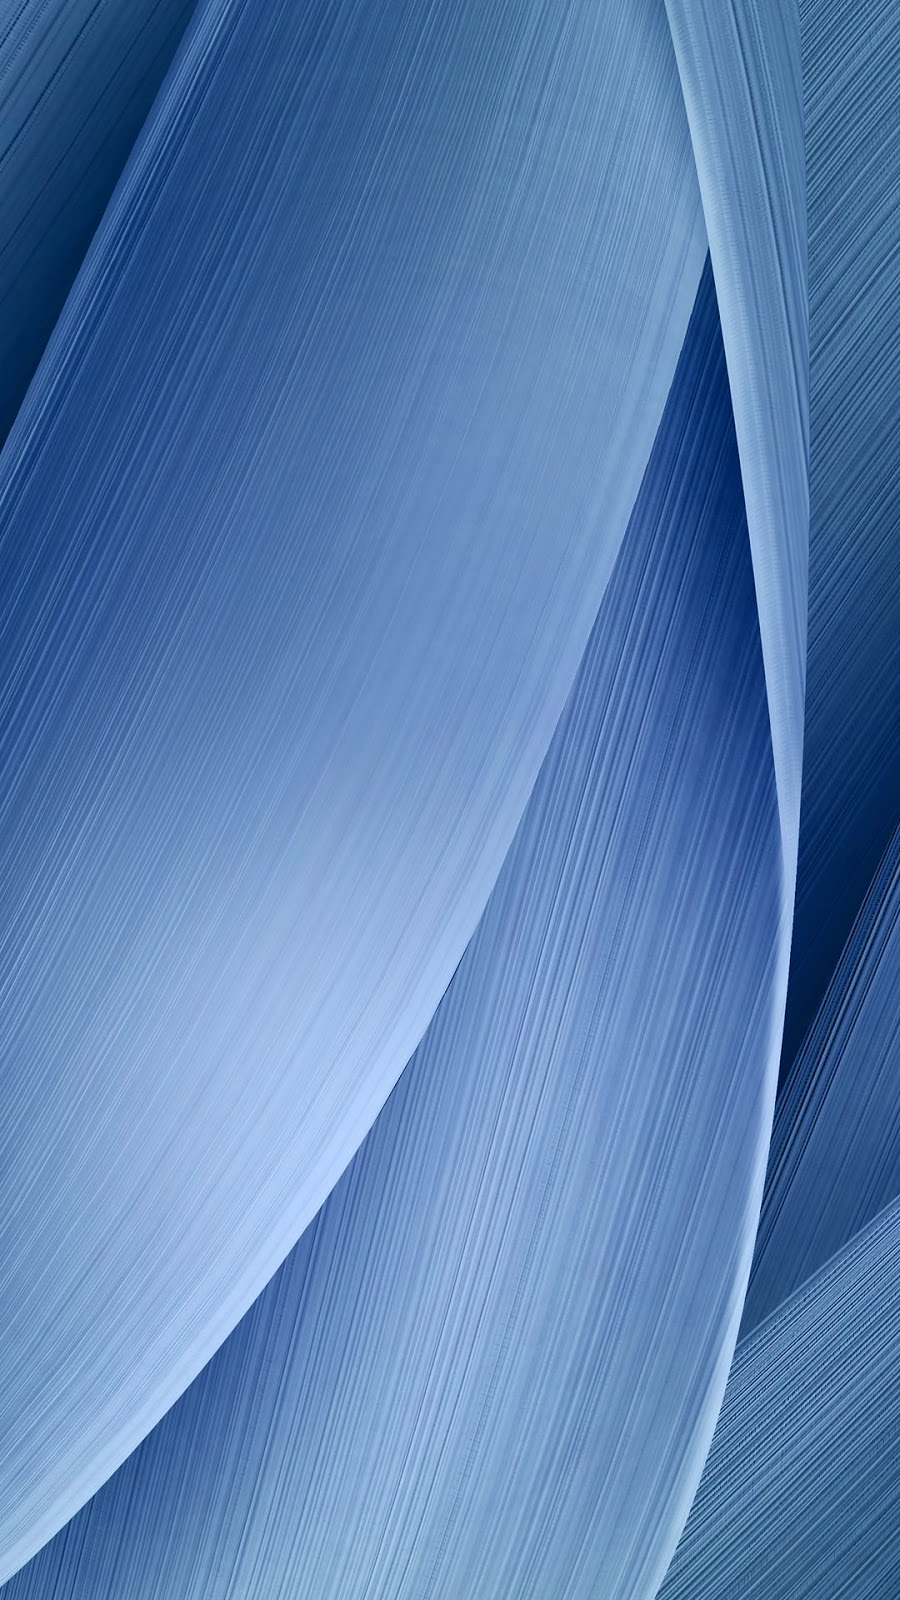 아수스 zenfone 2 레이저 벽지,푸른,웨이브,강청색,제도법,우주